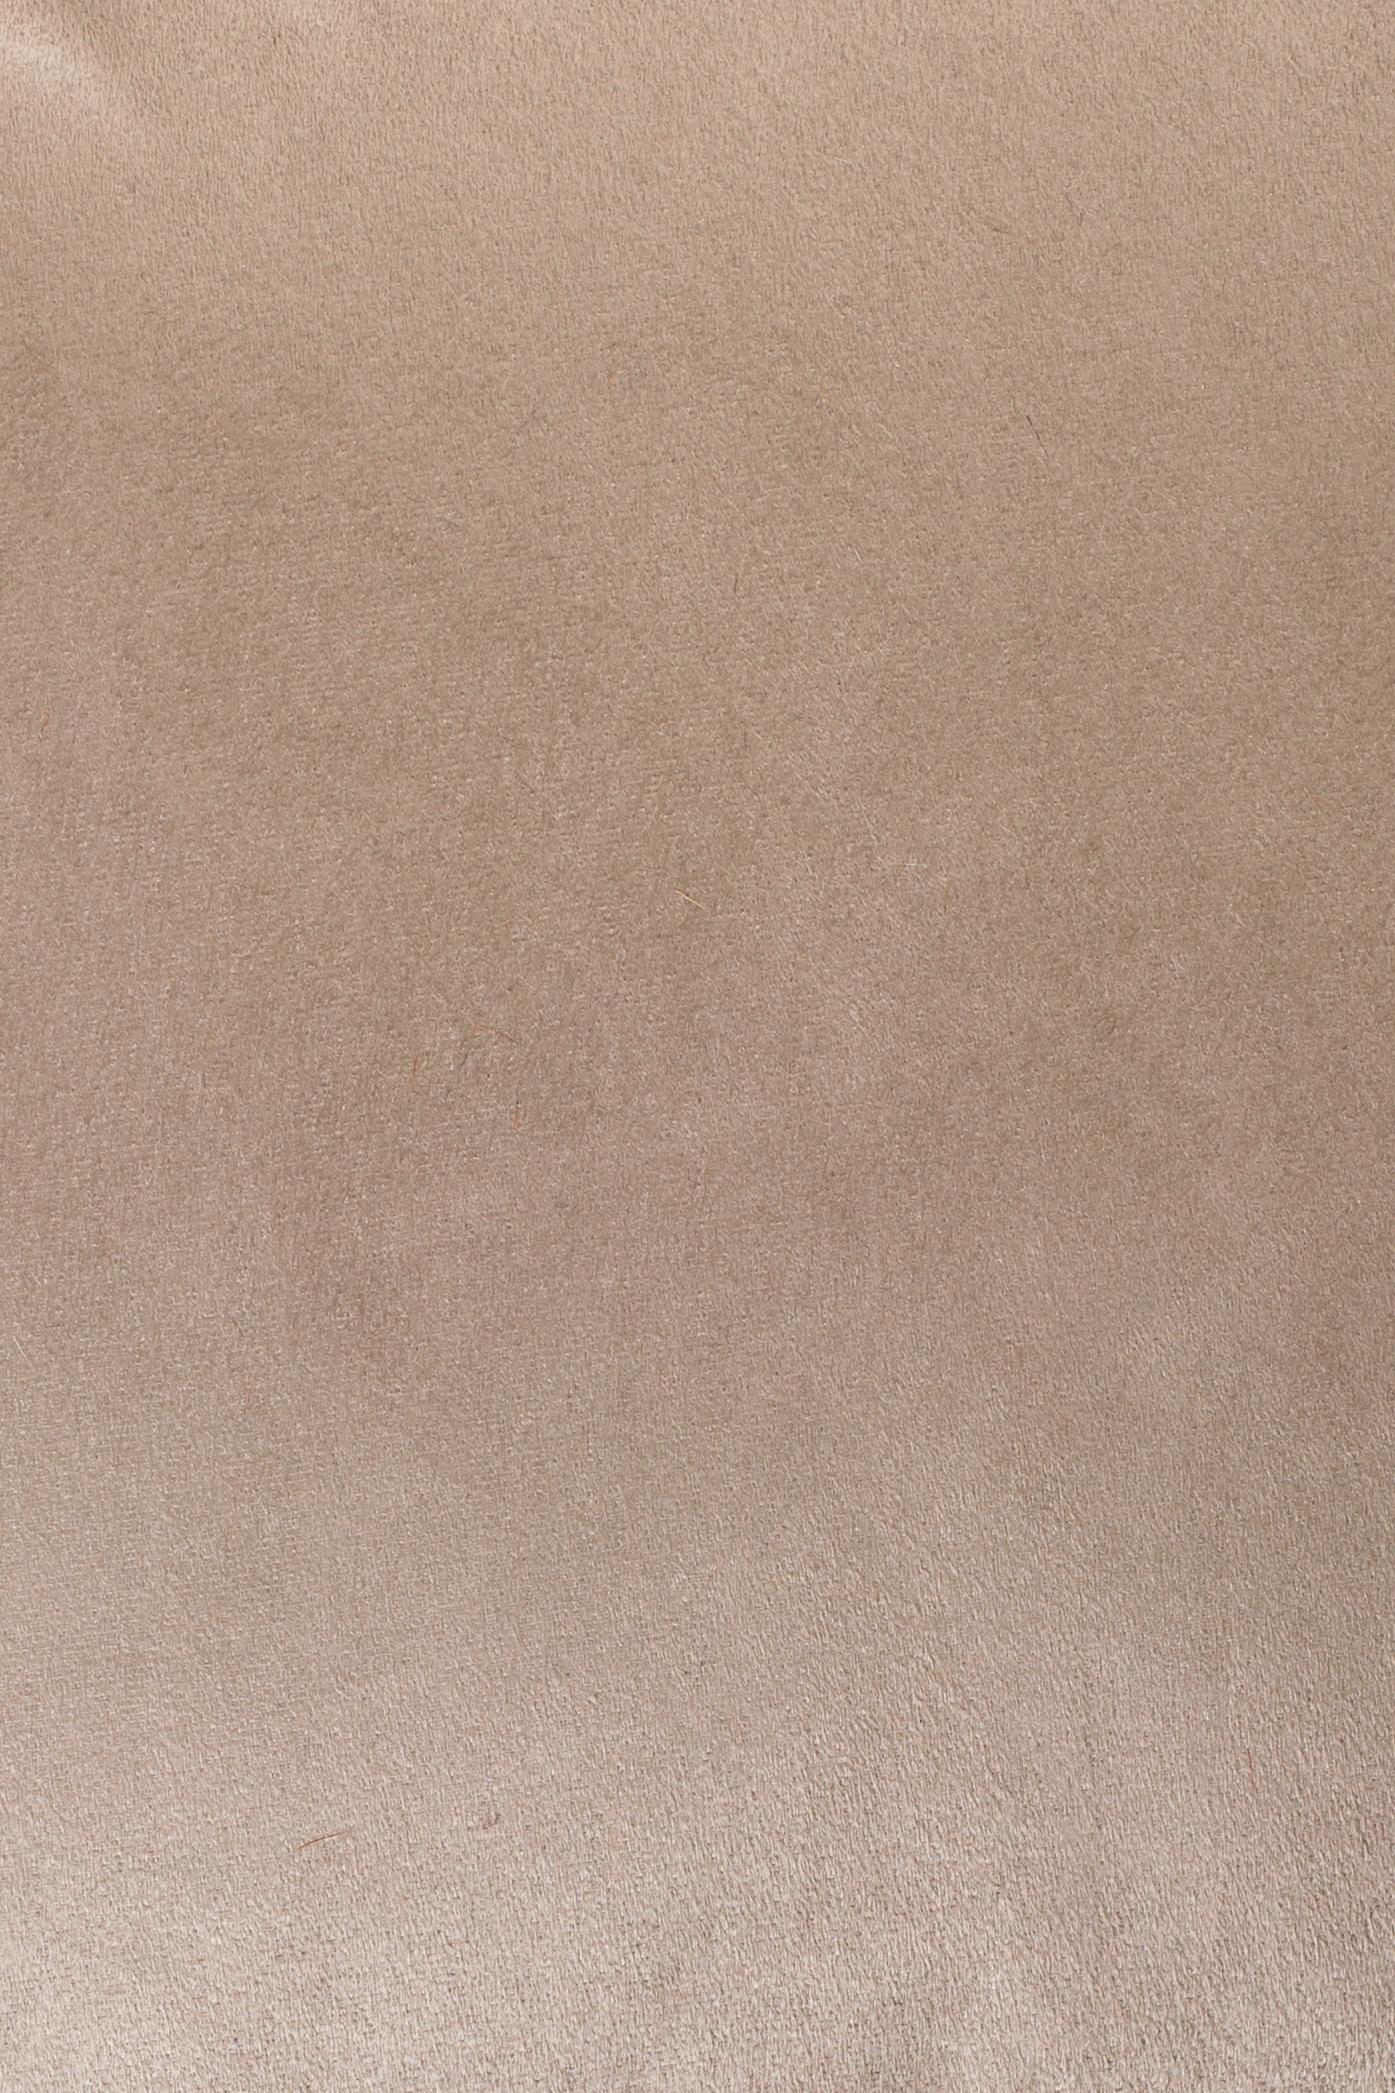 Senf-gemusterte Rindsleder-Kissen mit Suedette-Rücken und Leder, Reißverschluss, Quasten im Zustand „Neu“ in London, GB